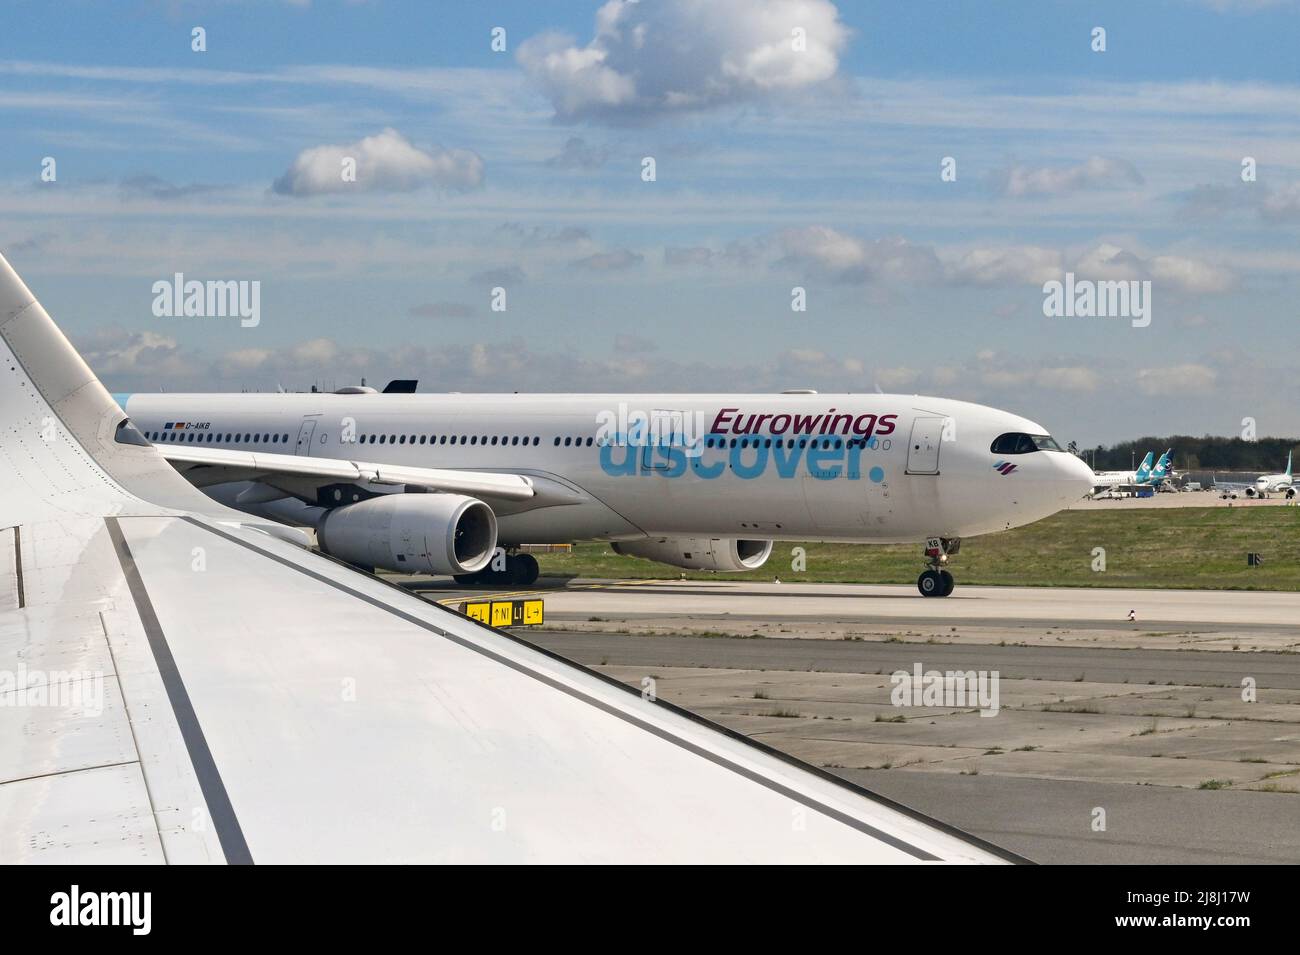 Francoforte, Germania - Aprile 2022: Airbus A330 passeggeri jet gestito dalla compagnia aerea tedesca Eurowings, controllata al 100% da Lufthansa. Foto Stock